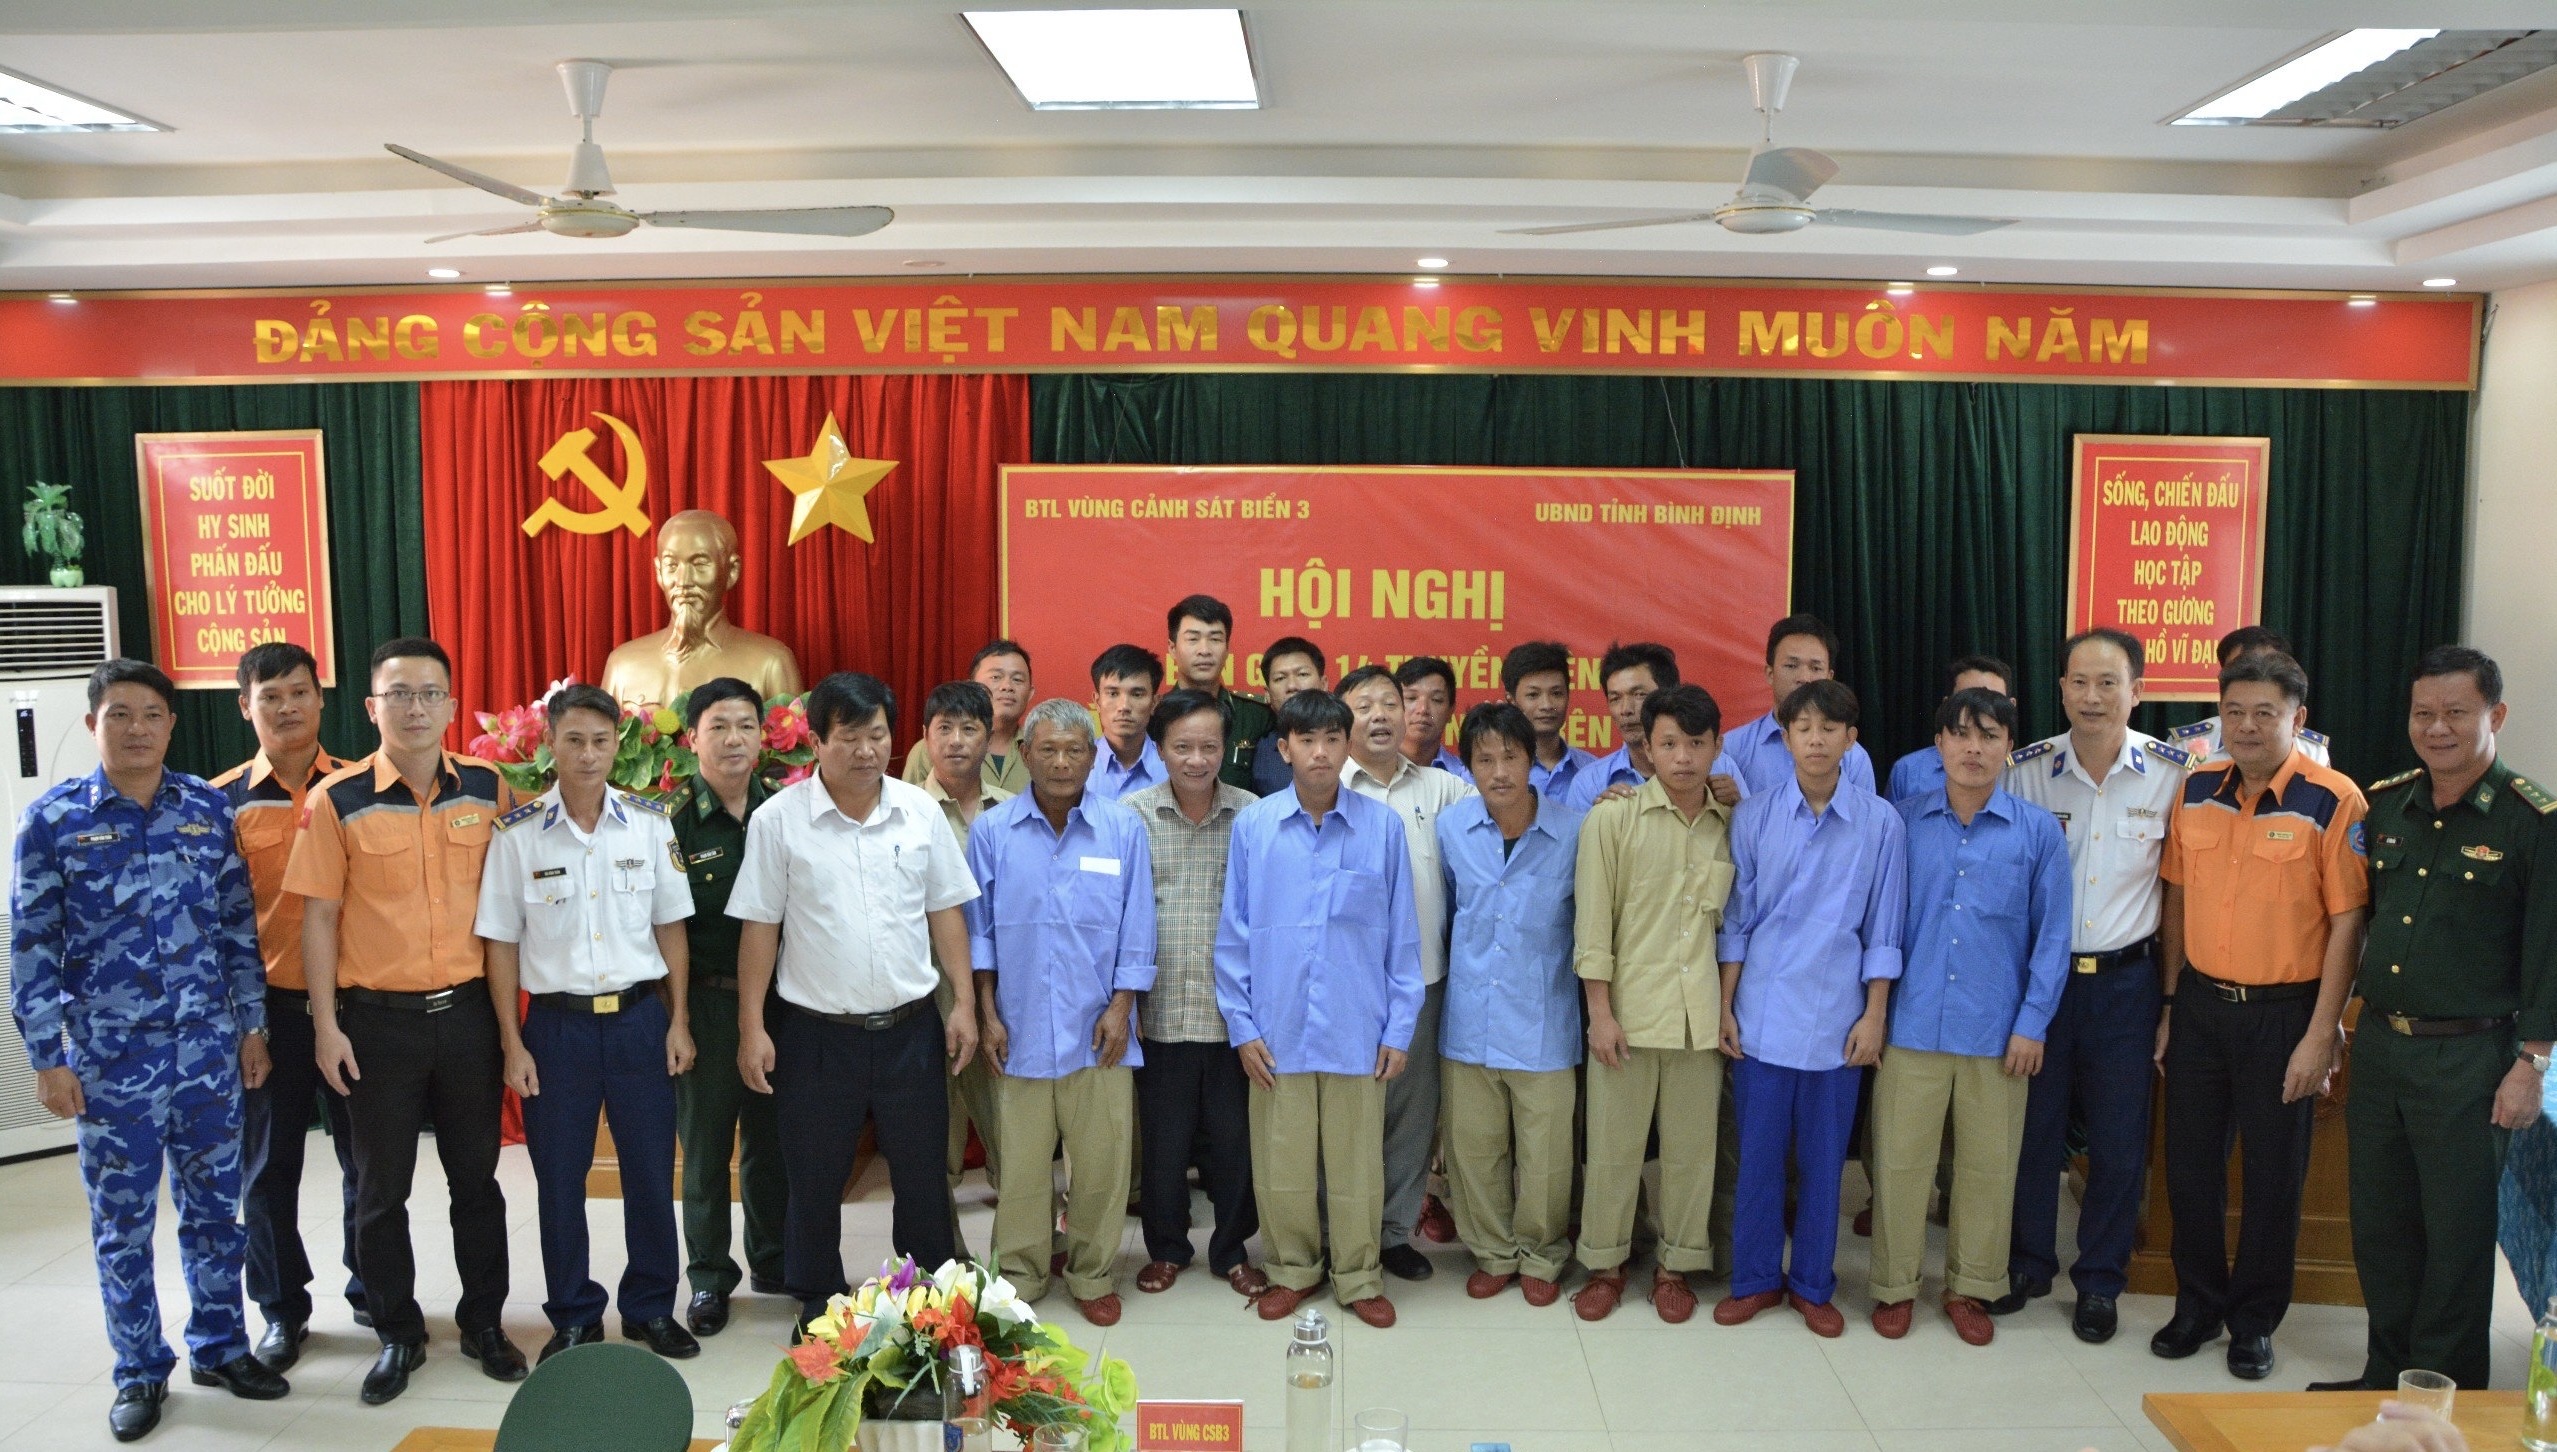 14 ngư dân Bình Định gặp nạn trên biển hiện sức khỏe ổn định và đã được BĐBP tỉnh bàn giao cho tỉnh Bình Định vàgia đình các ngư dân.